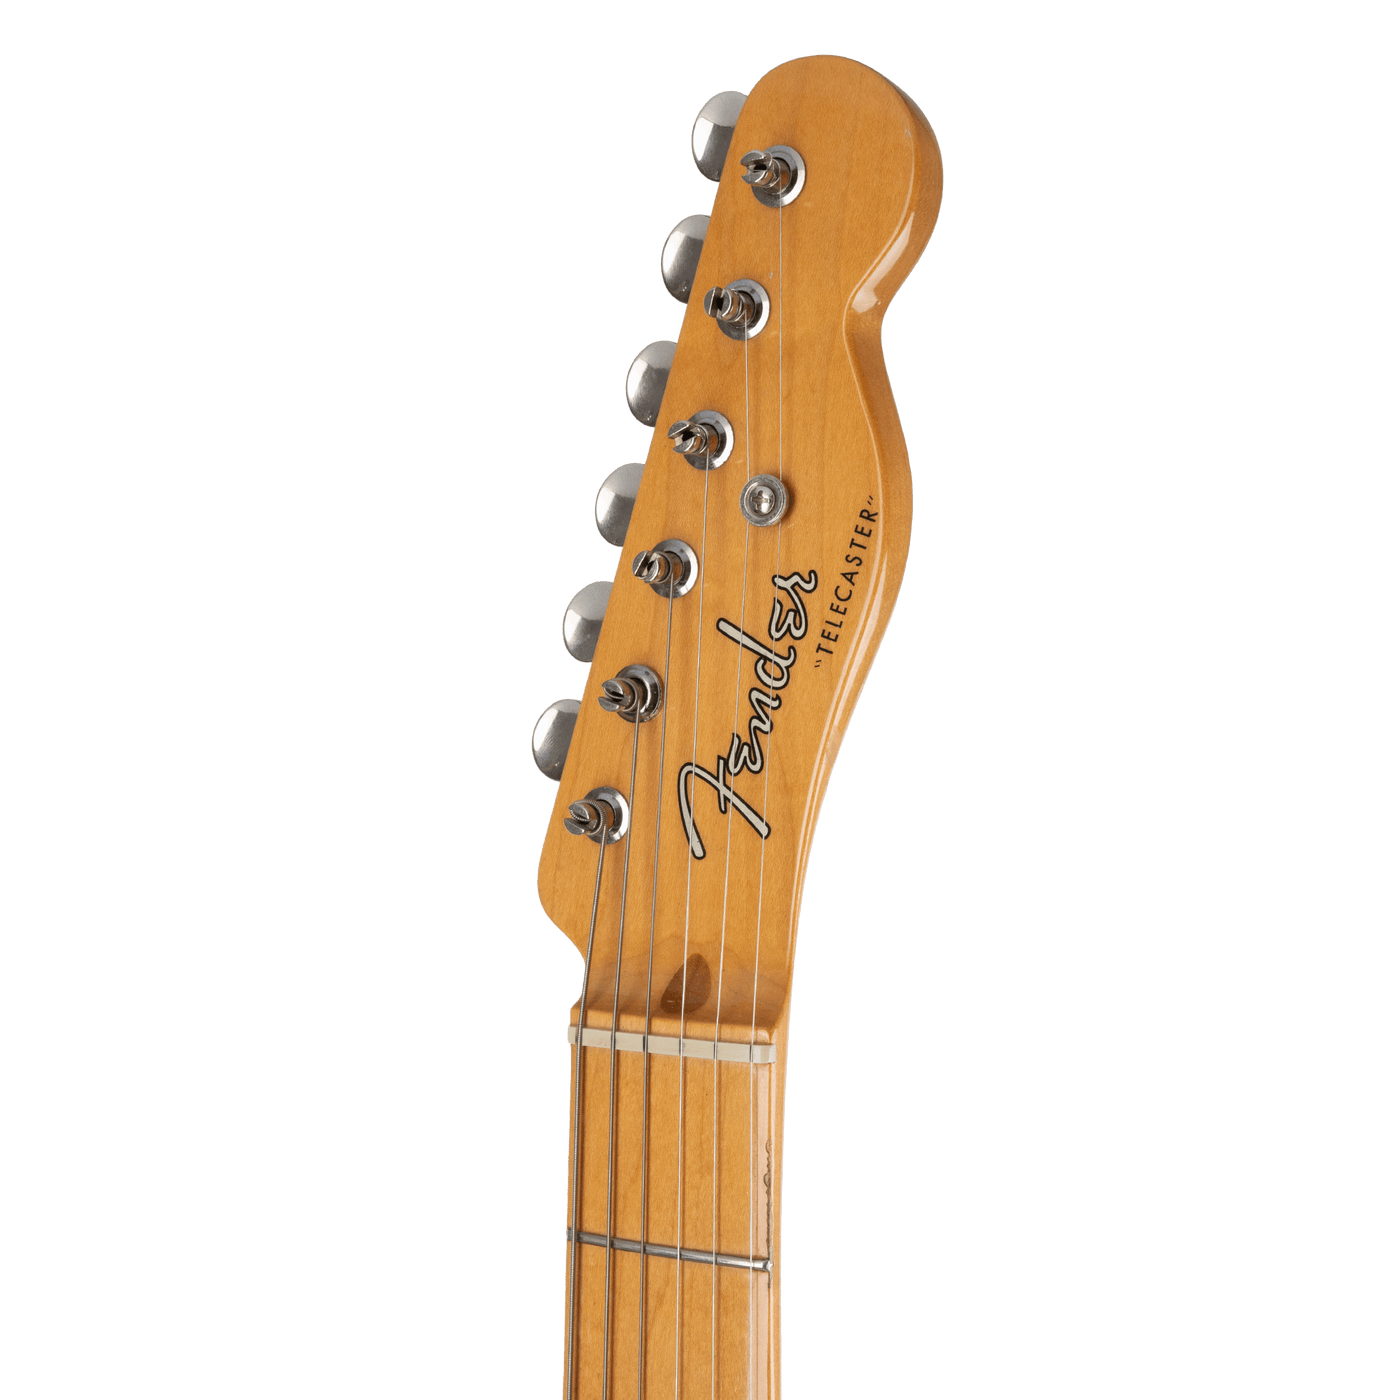 Fender Telecaster Classic Series '50s Sunburst MIM 2016 - Guitarra Eléctrica